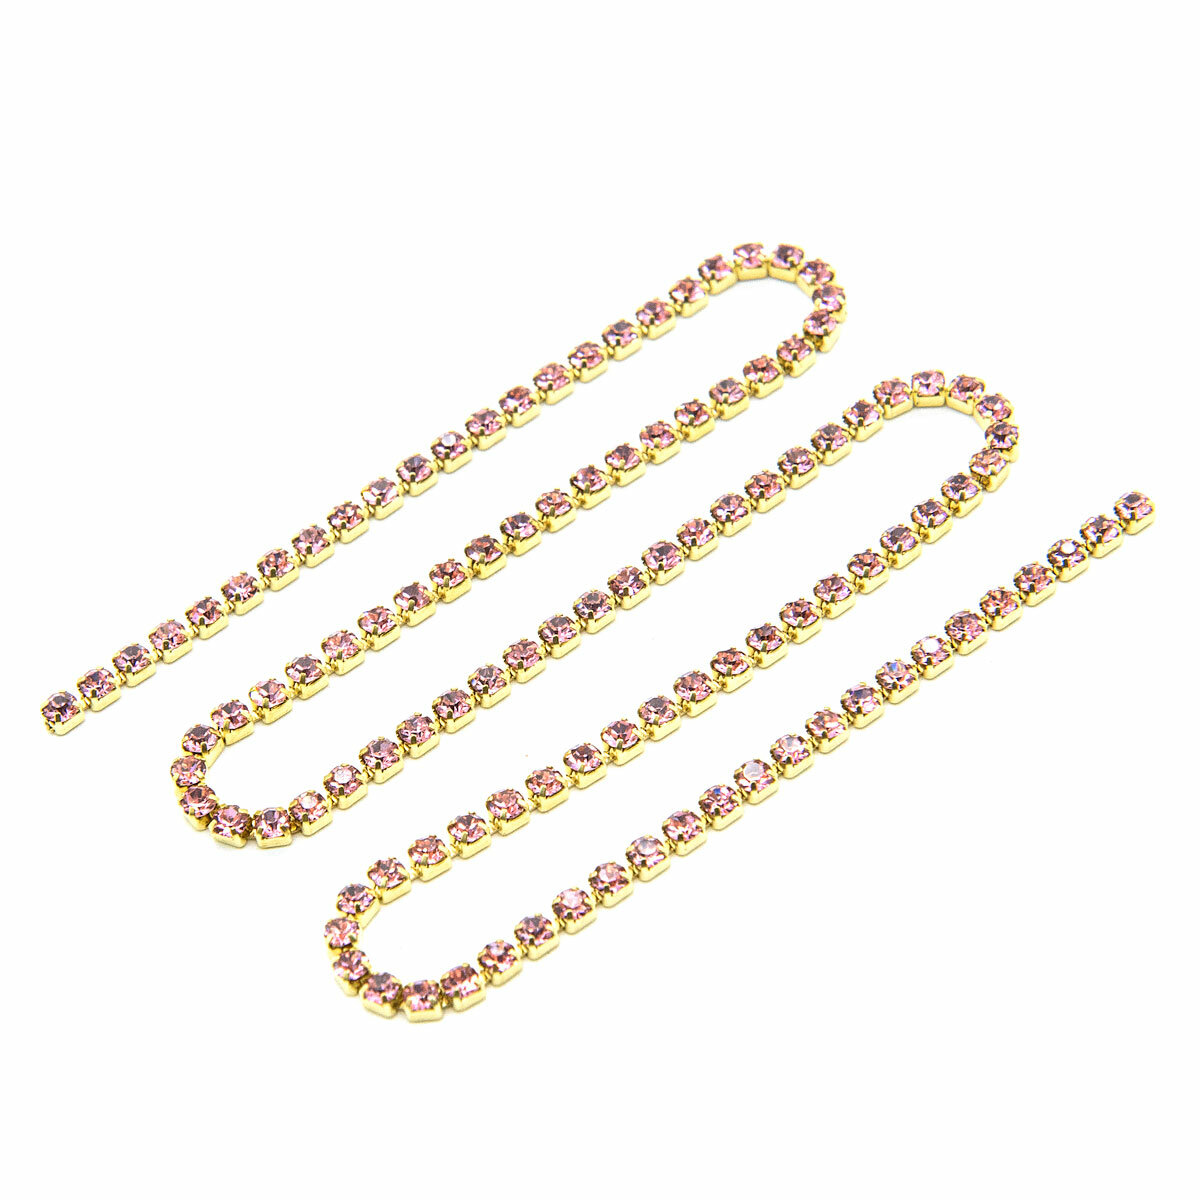 ЦС006ЗЦ2 Стразовые цепочки (золото), розовый, размер 2 мм, 30 см/упак